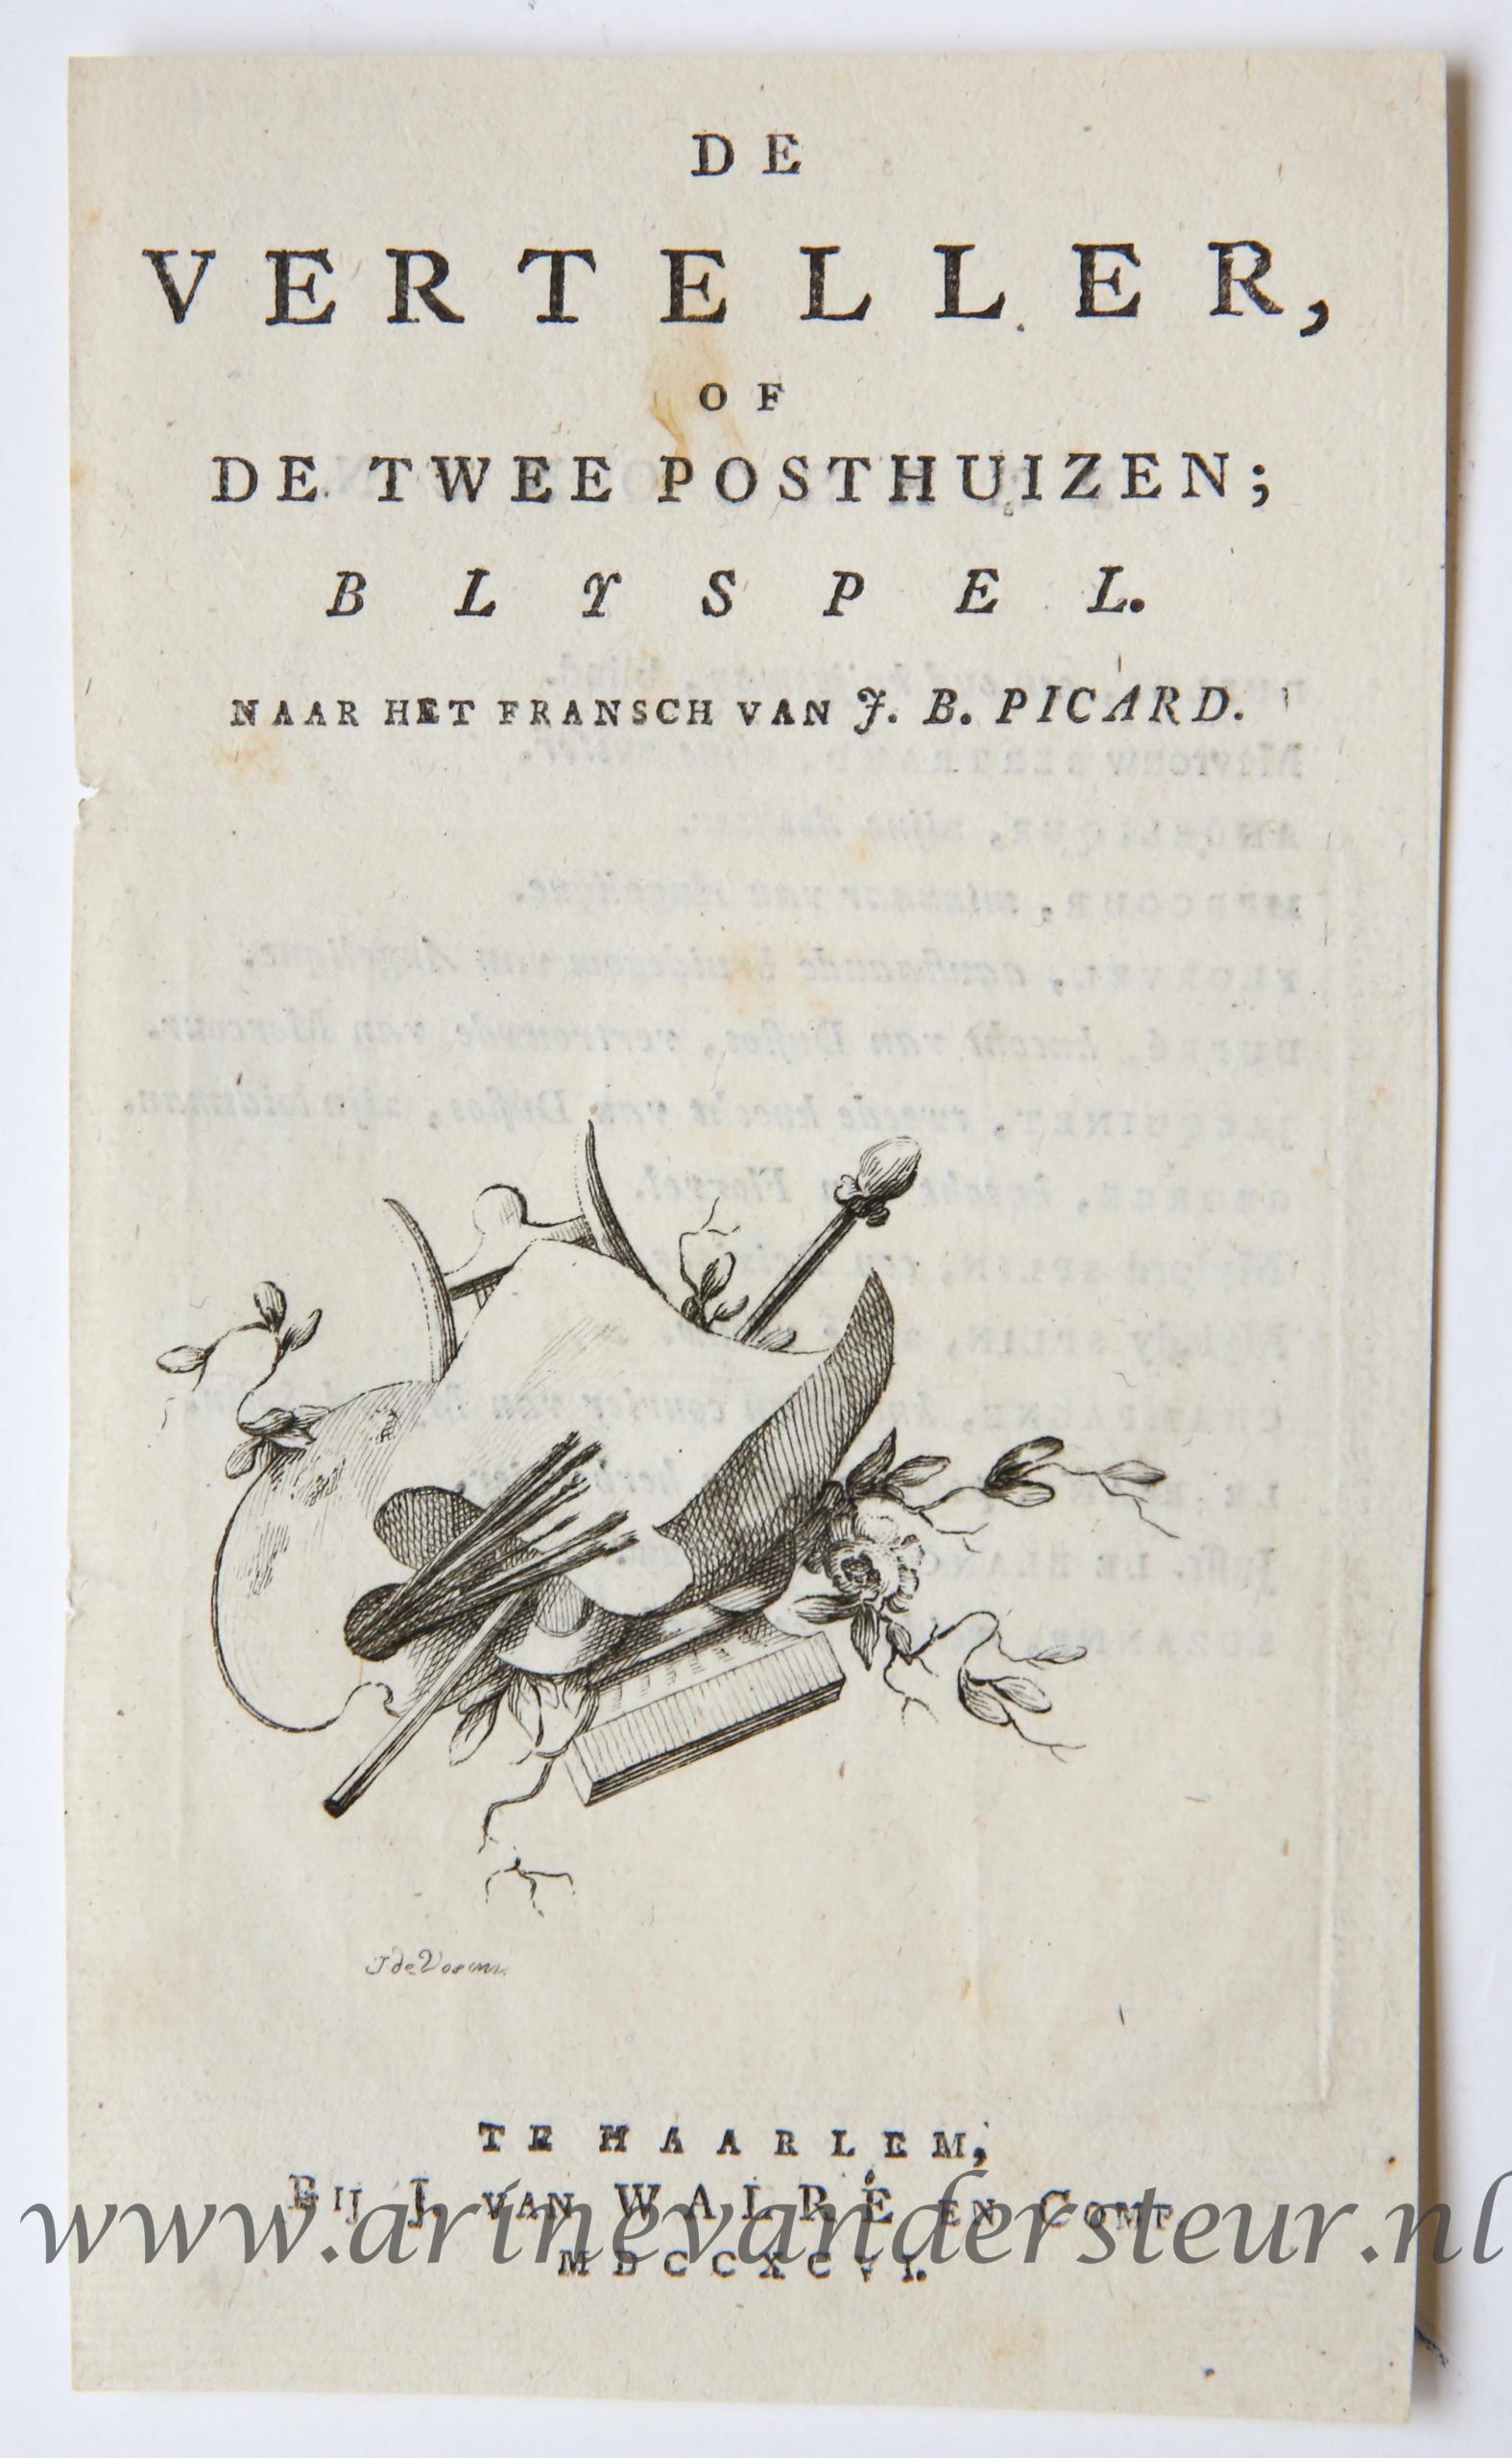 [Antique title page, 1796] De verteller, of De twee posthuizen; blyspel, published 1796, 1 p.